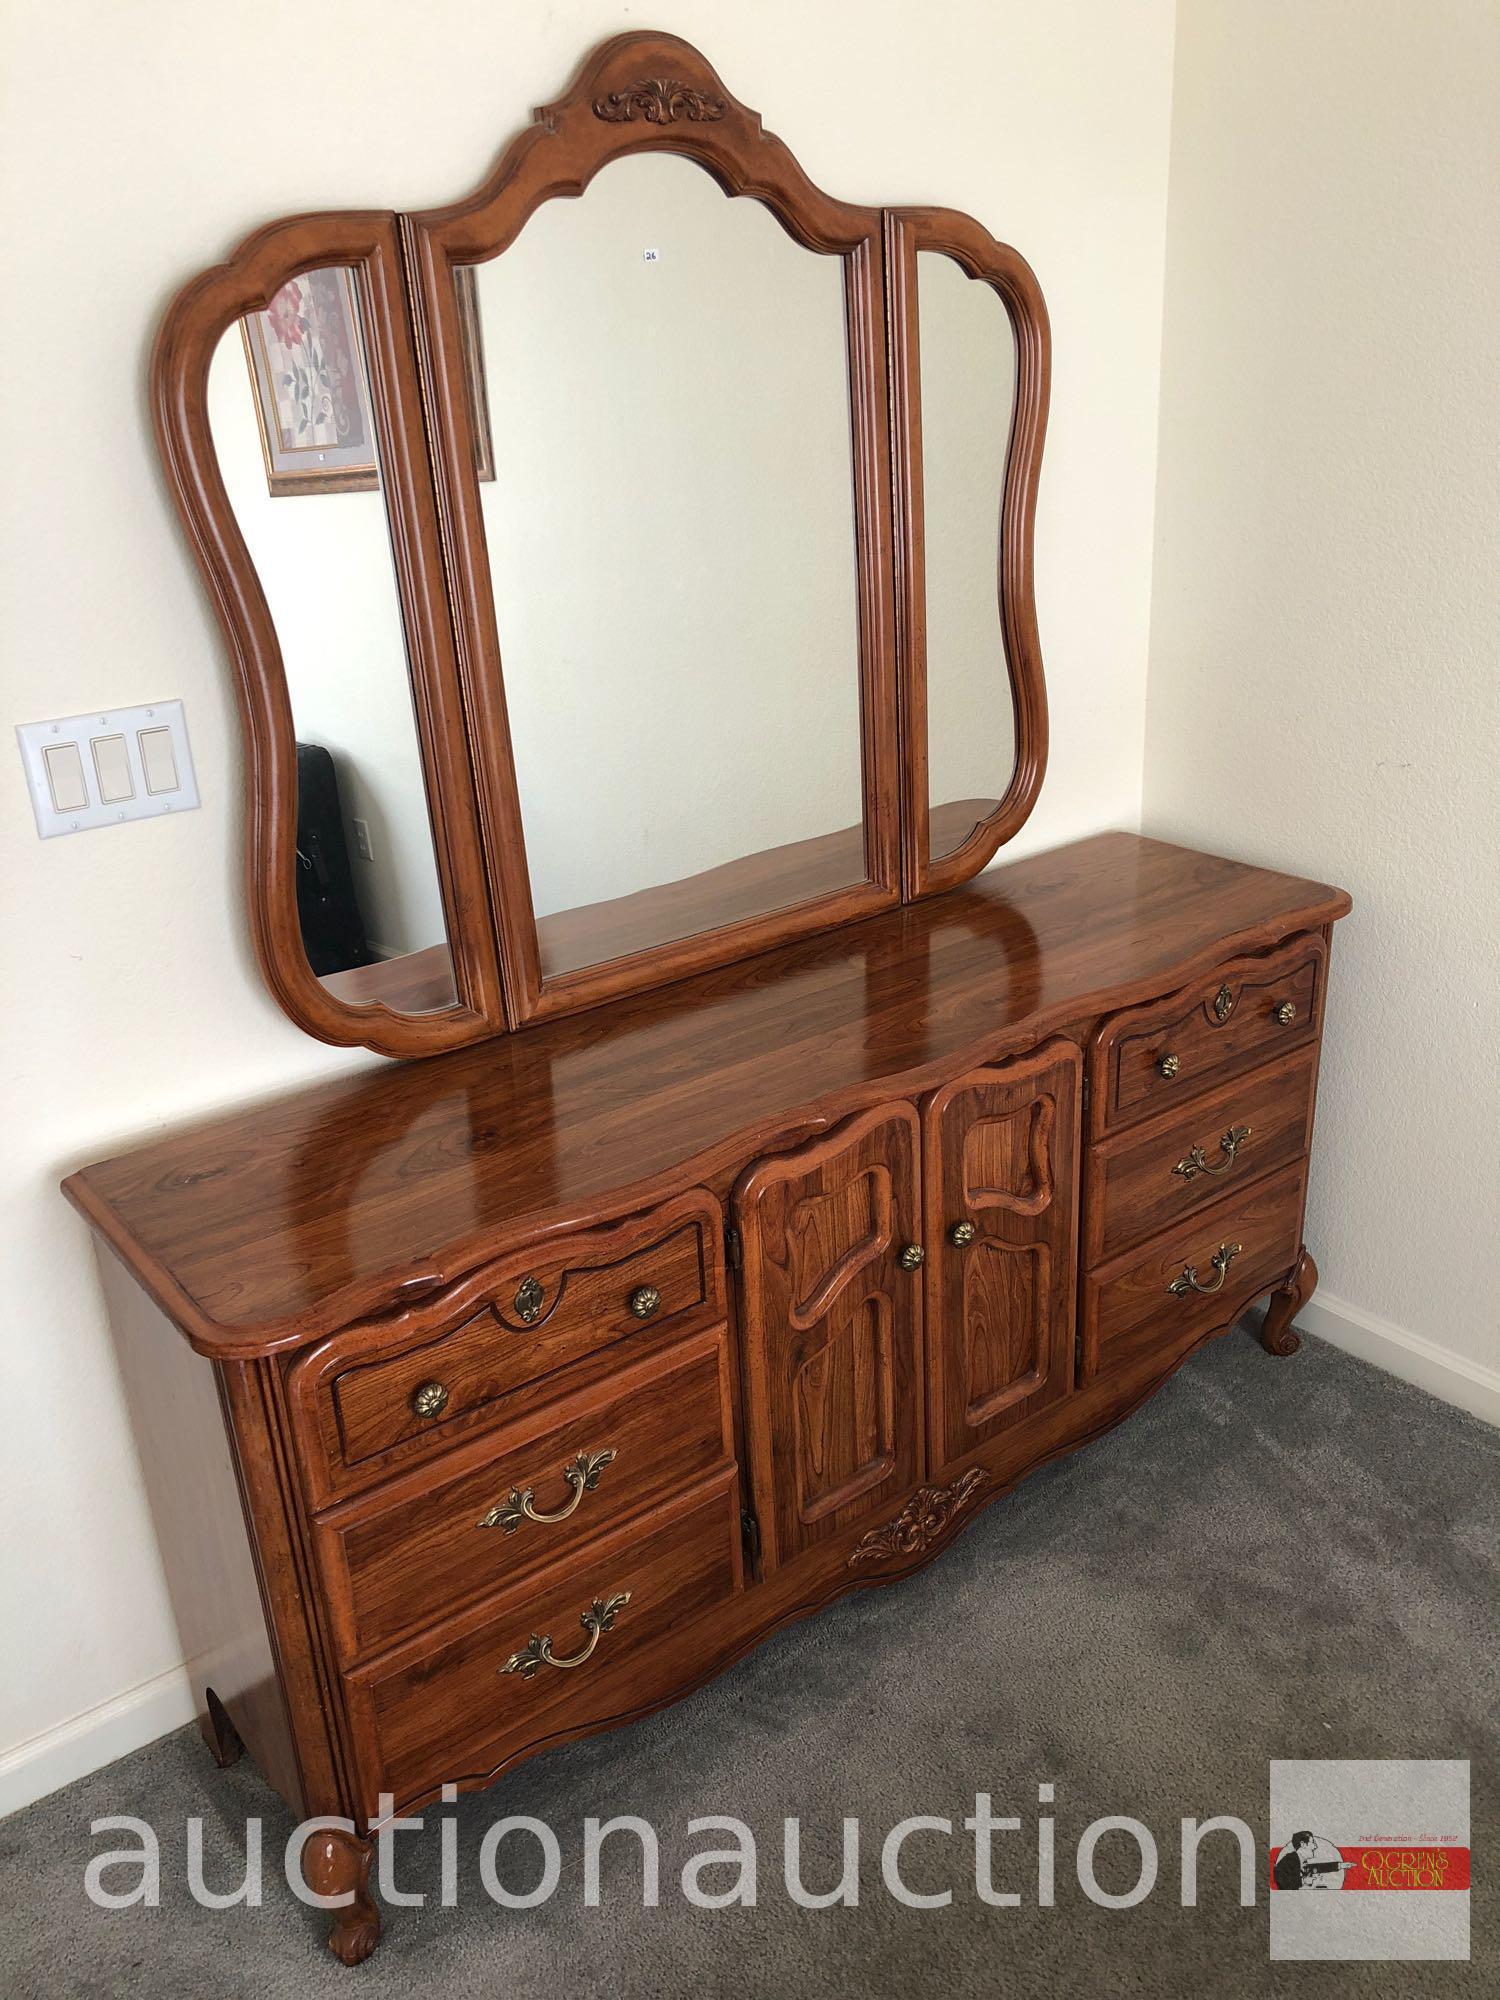 Furniture - Triple dresser, 9 drawers, triple dresser mirror, 65"wx72"hx17"d